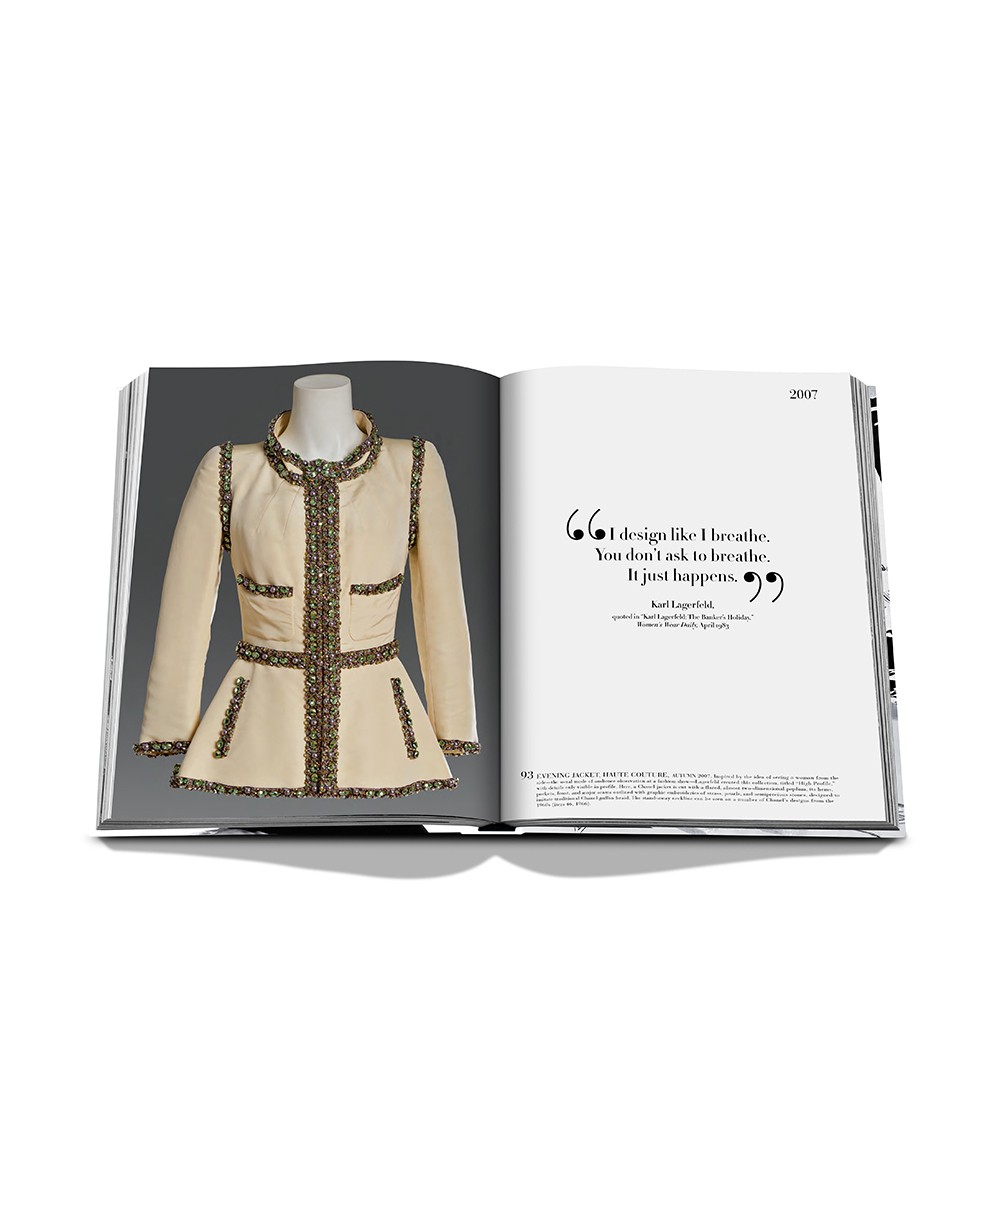 Das Produktbild zeigt den Bildband „Chanel: The Legend of an Icon“ von Assouline - RAUM concept store